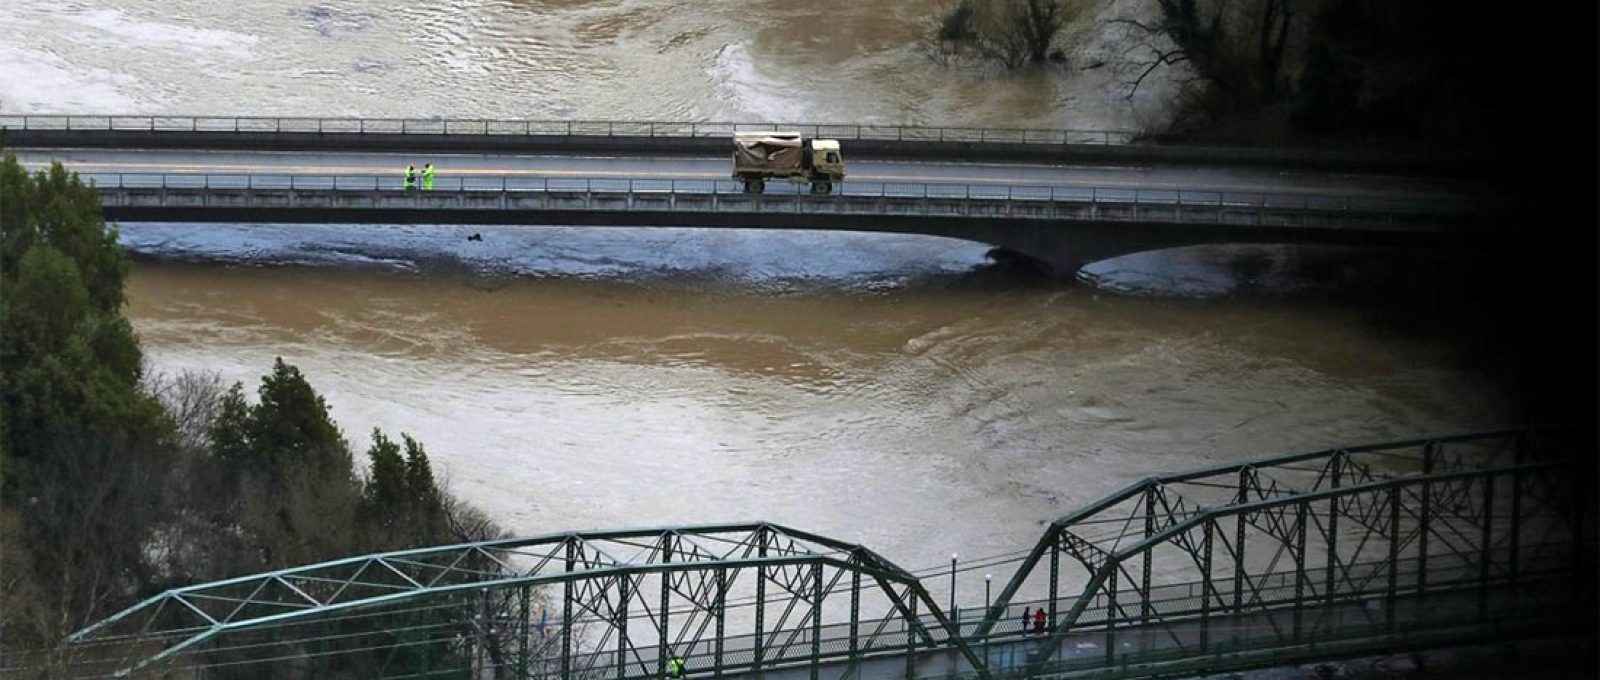 Veículo militar em uma ponte sobre o rio Russian em Guerneville, Califórnia, durante uma enchente em fevereiro de 2019 (Foto: Justin Sullivan/Getty Images).